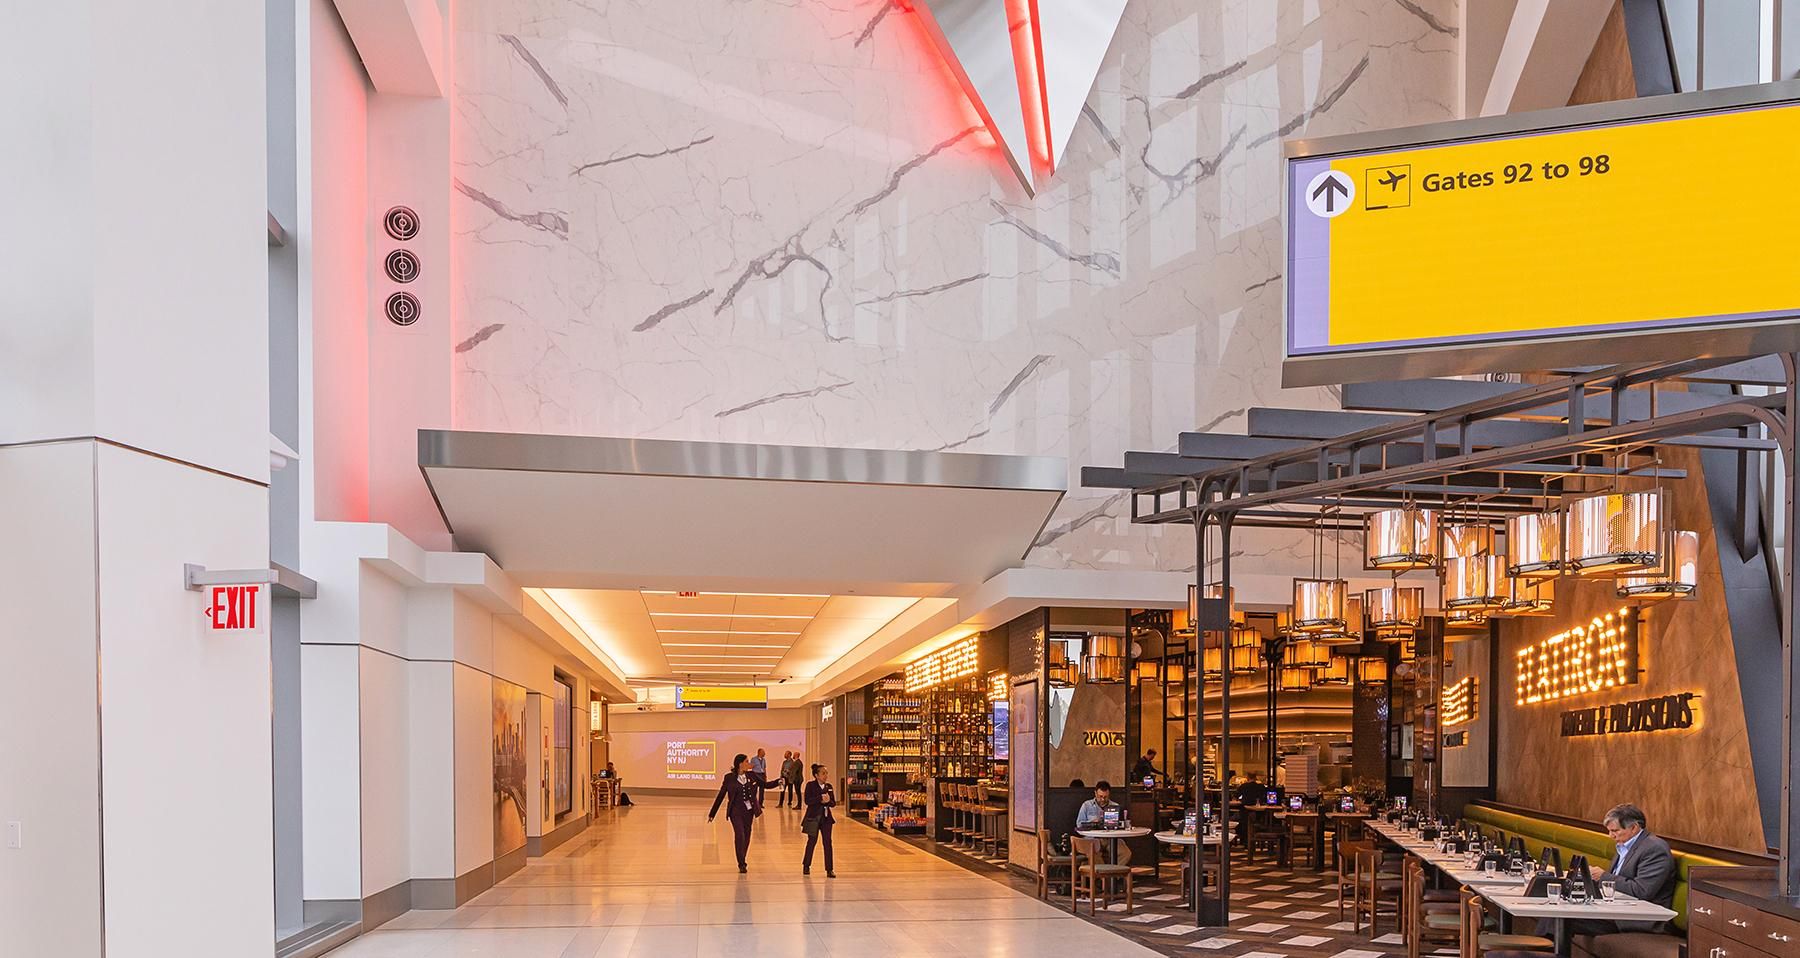 Нью-Йоркский аэропорт LaGuardia показал свой новый терминал  как он выглядит - Закордон